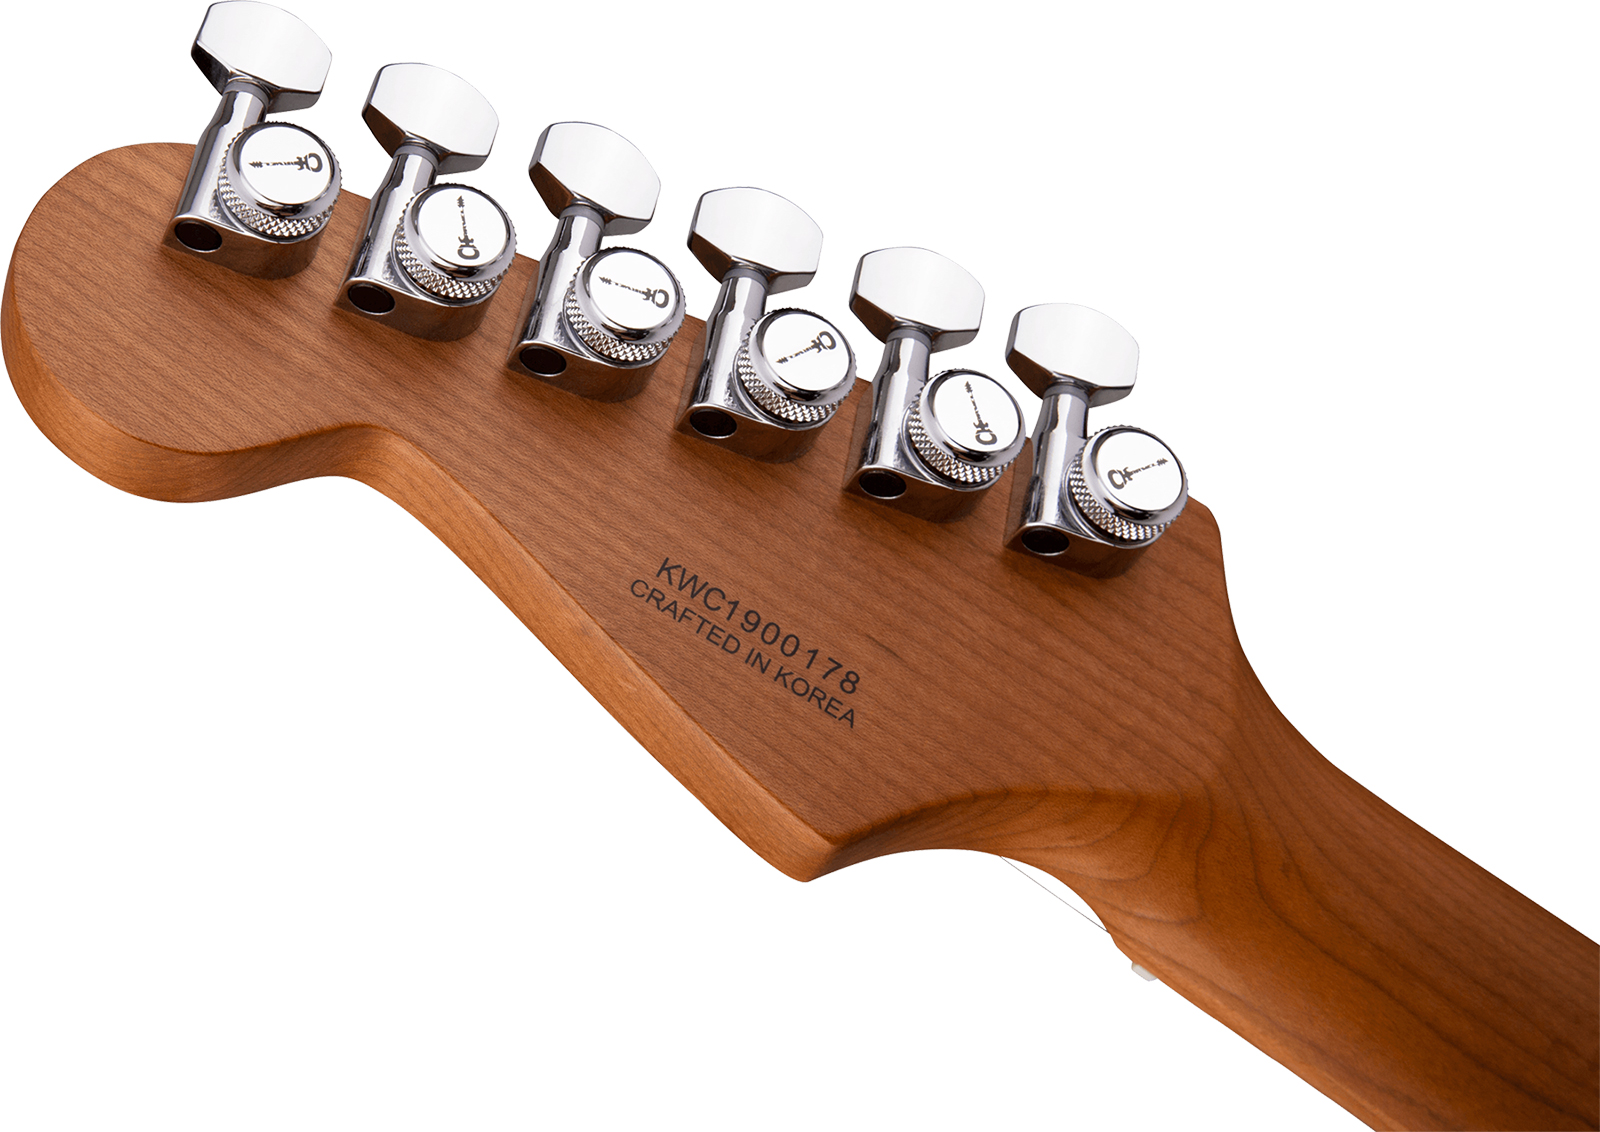 Charvel Dinky Dk24 Hss 2pt Cm Ash Pro-mod Seymour Duncan Trem Mn - Red Ash - Elektrische gitaar in Str-vorm - Variation 3